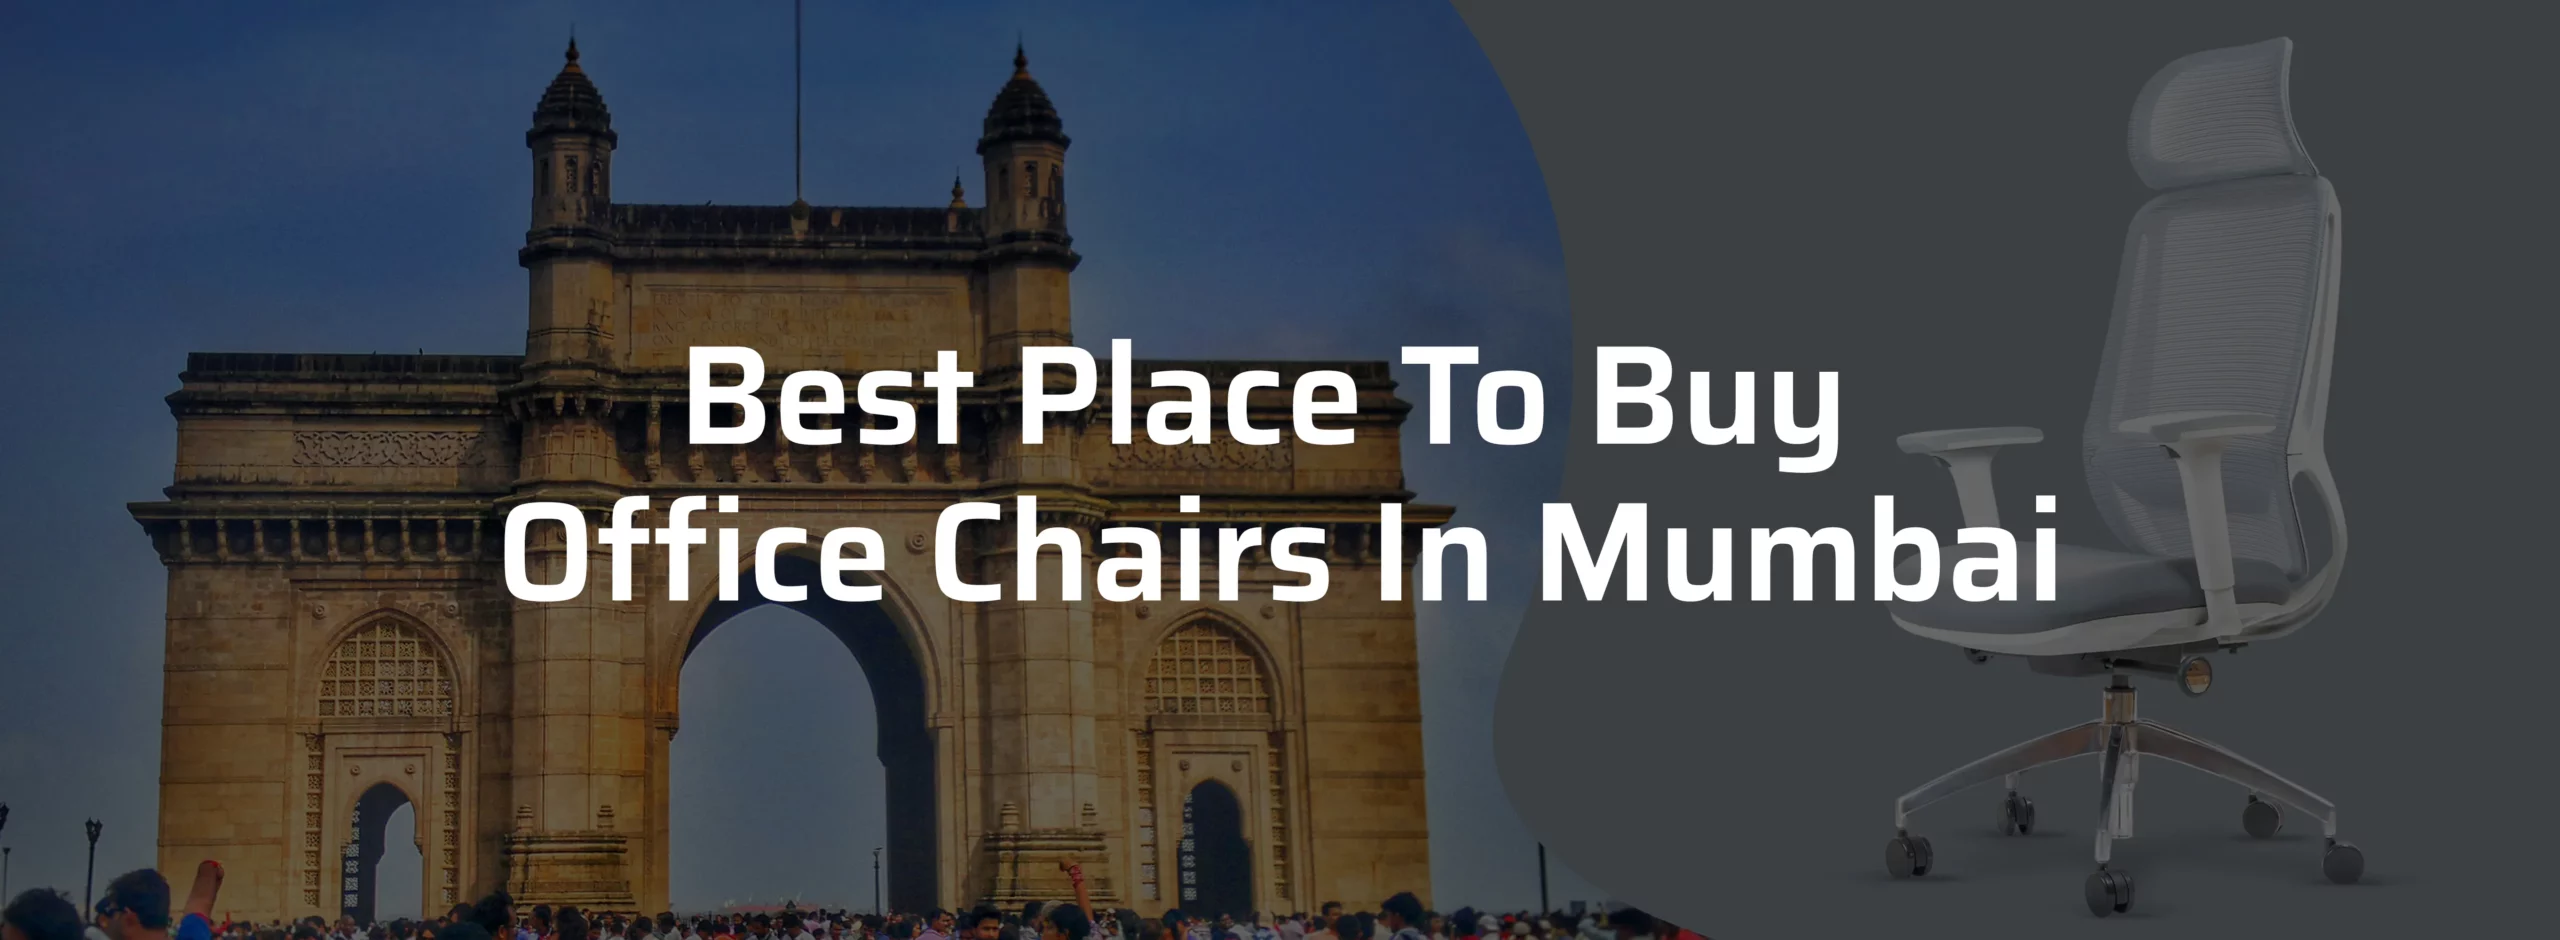 Office chairs in mumbai